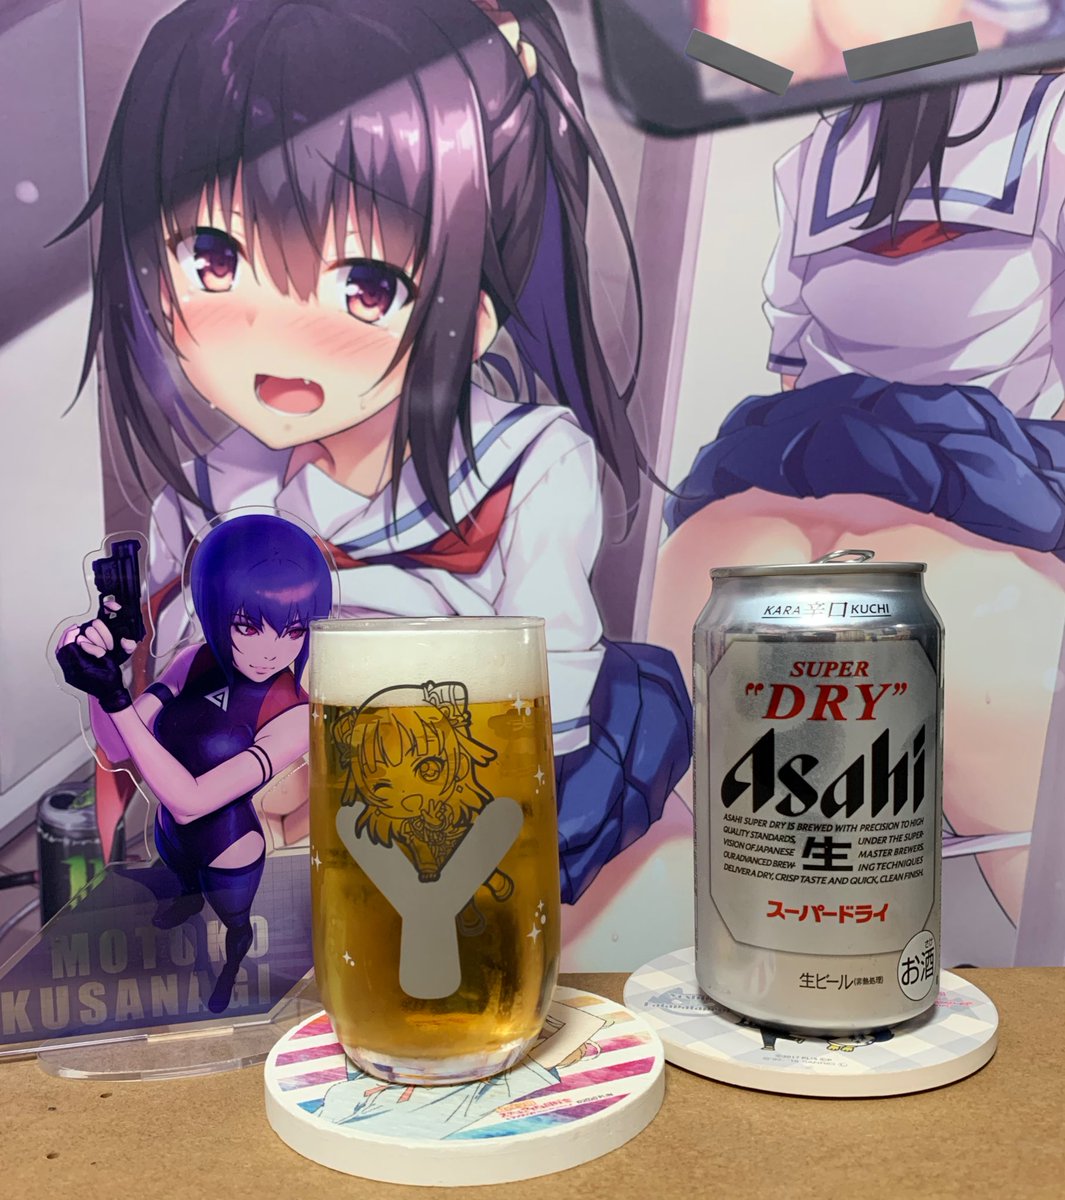 ビール飲みますか🍻 隠すの大変なんだからね😍